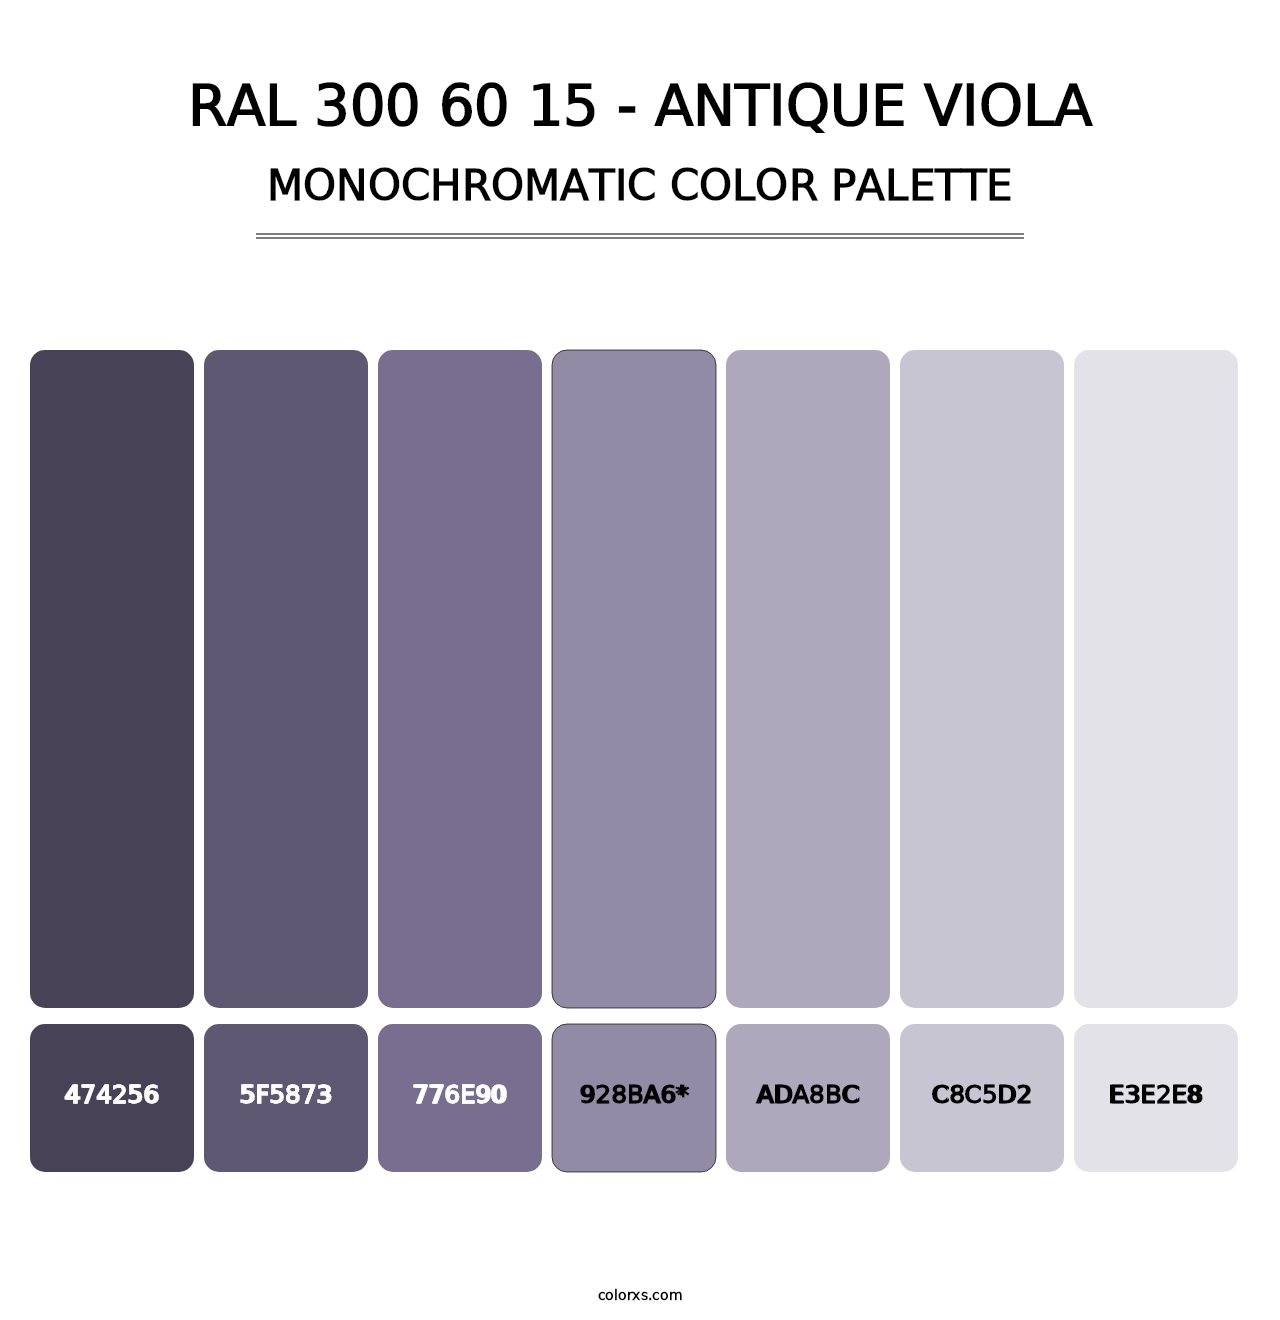 RAL 300 60 15 - Antique Viola - Monochromatic Color Palette